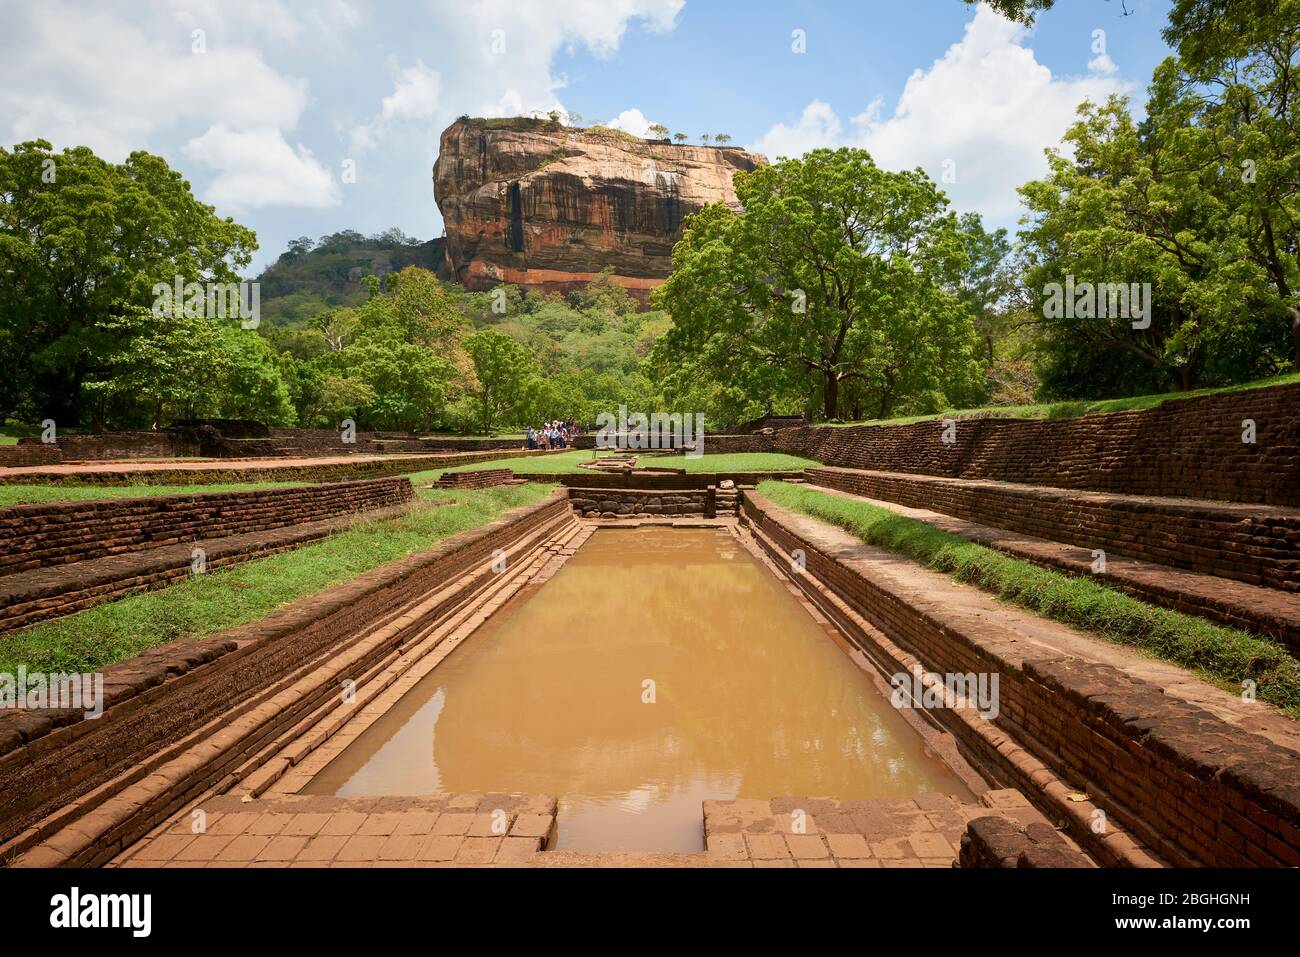 Roccia di Sigiriya in Sri Lanka, vista dal sito archeologico. Questa famosa attrazione turistica è un sito patrimonio dell'umanità dell'UNESCO e presenta rovine provenienti da Foto Stock